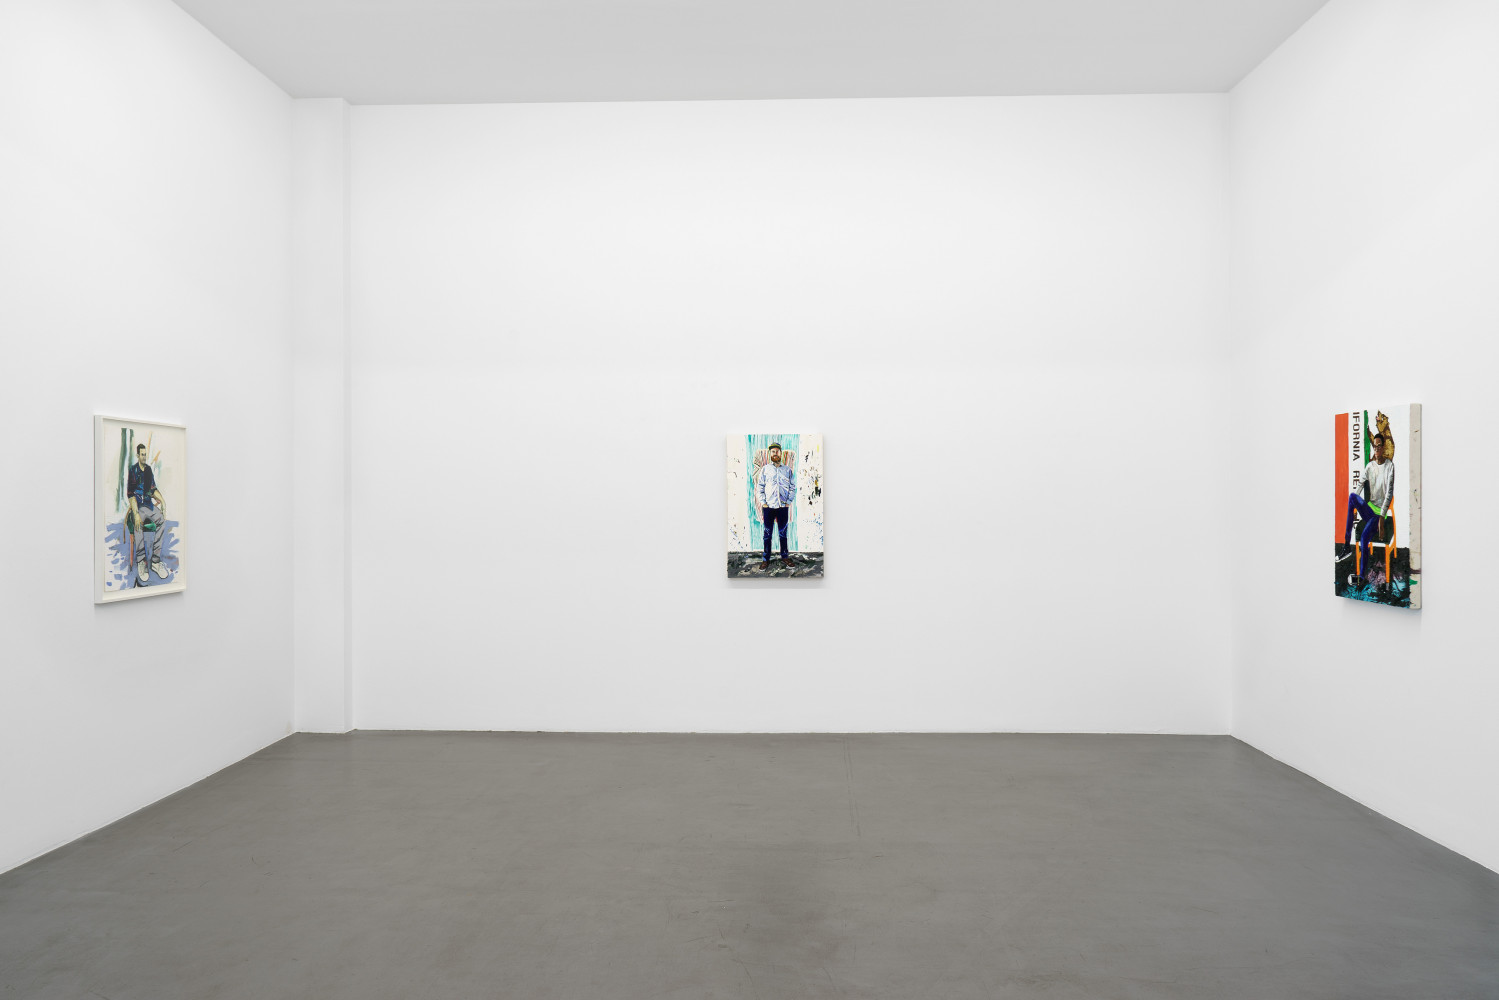 Raffi Kalenderian, ‘Always in Rare Form’, Installation view, Buchmann Galerie, 2018